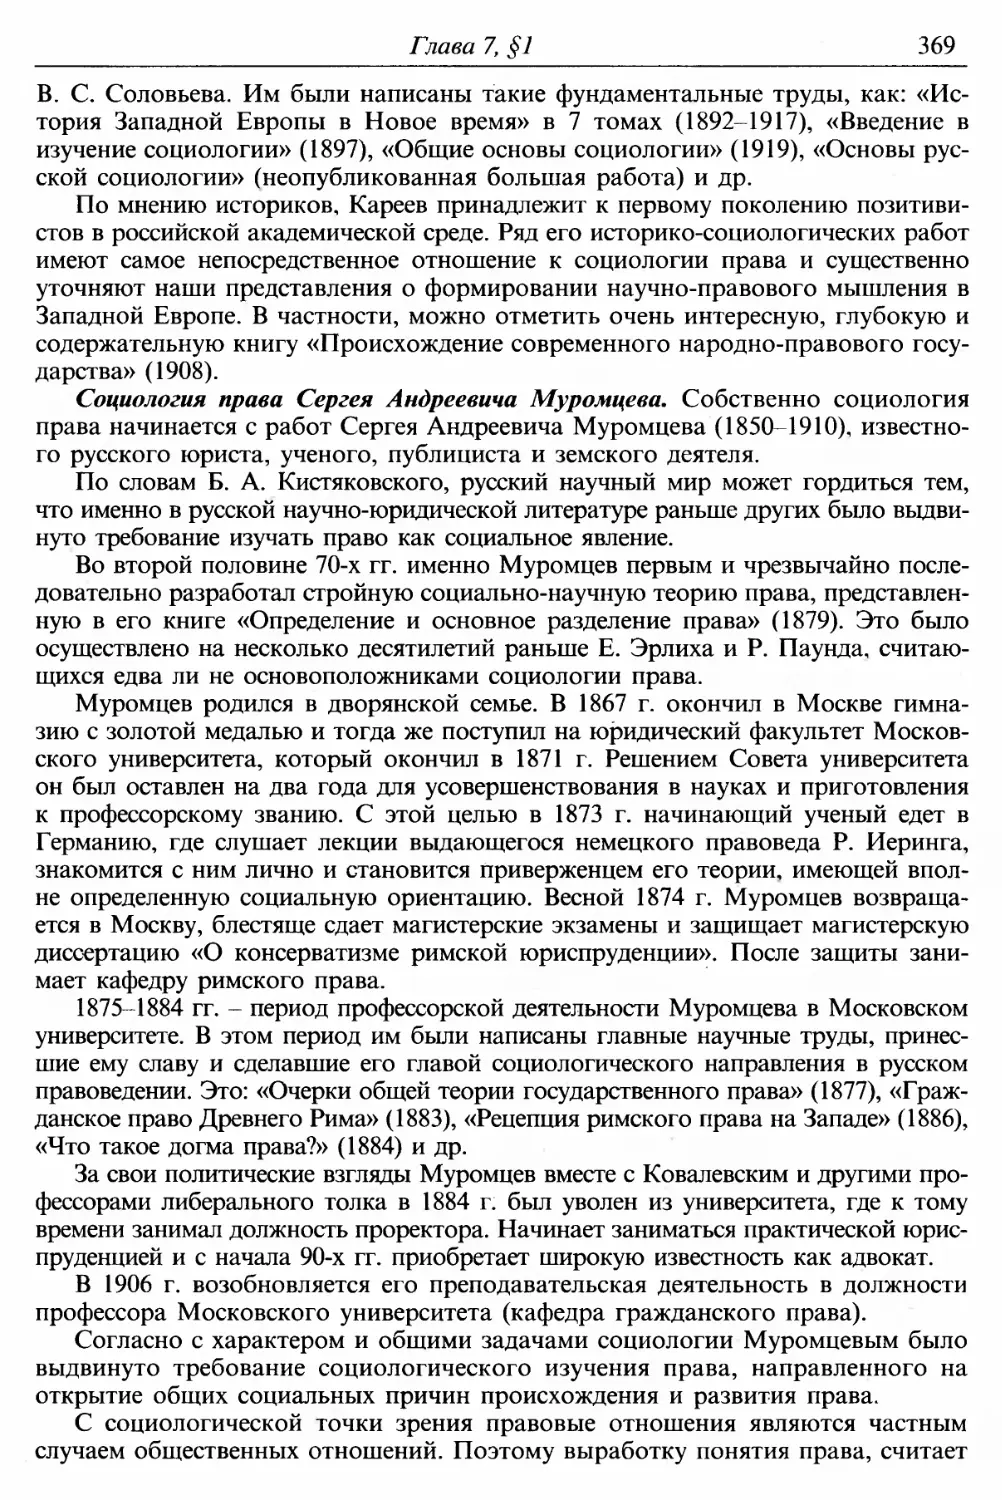 Социология права Сергея Андреевича Муромцева